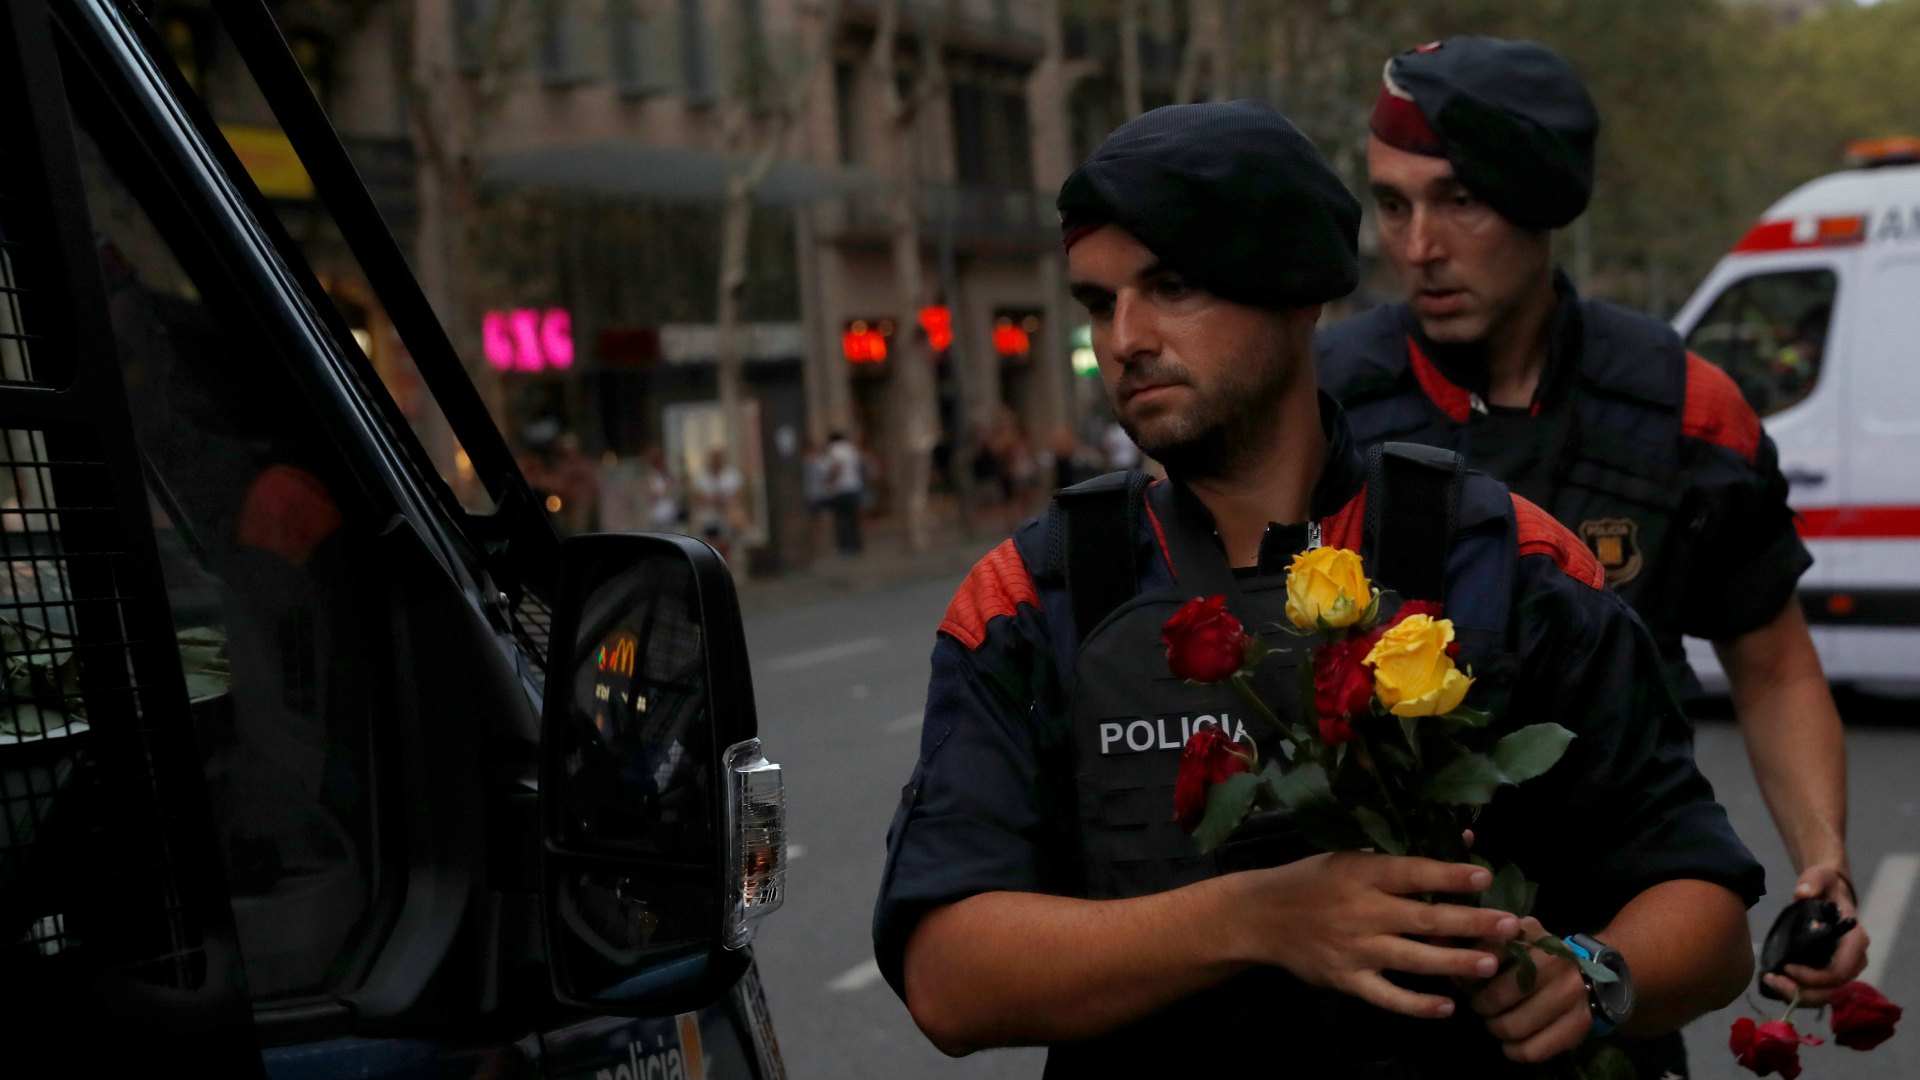 La manifestación de Barcelona contra el terrorismo, en imágenes 18